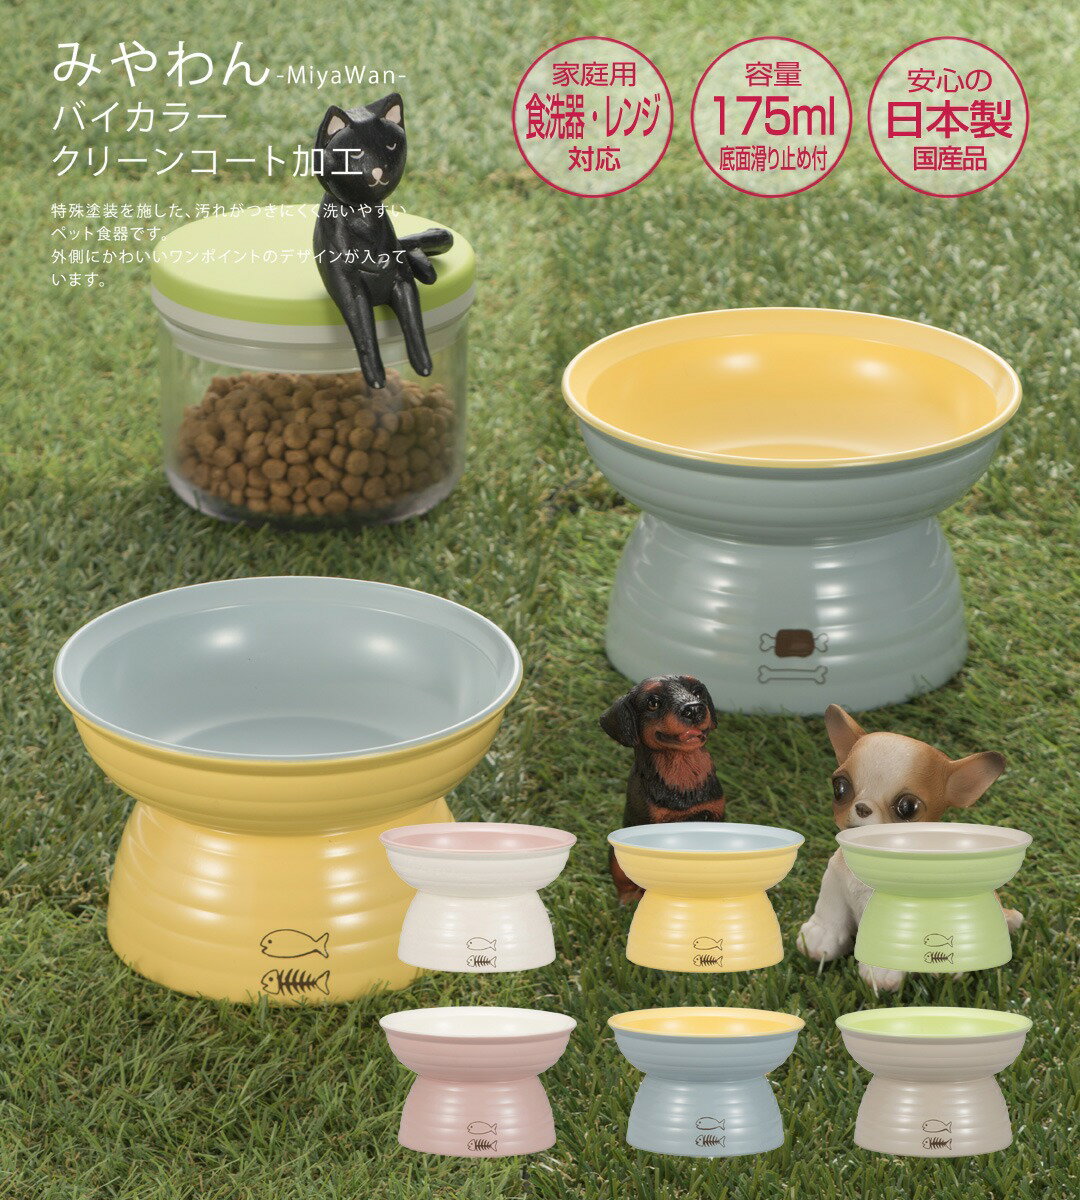 日本代購 空運 MiyaWan 日本製 高腳 寵物碗 175ml 高架 護頸 貓碗 狗碗 防污潑水加工 防髒 易清潔